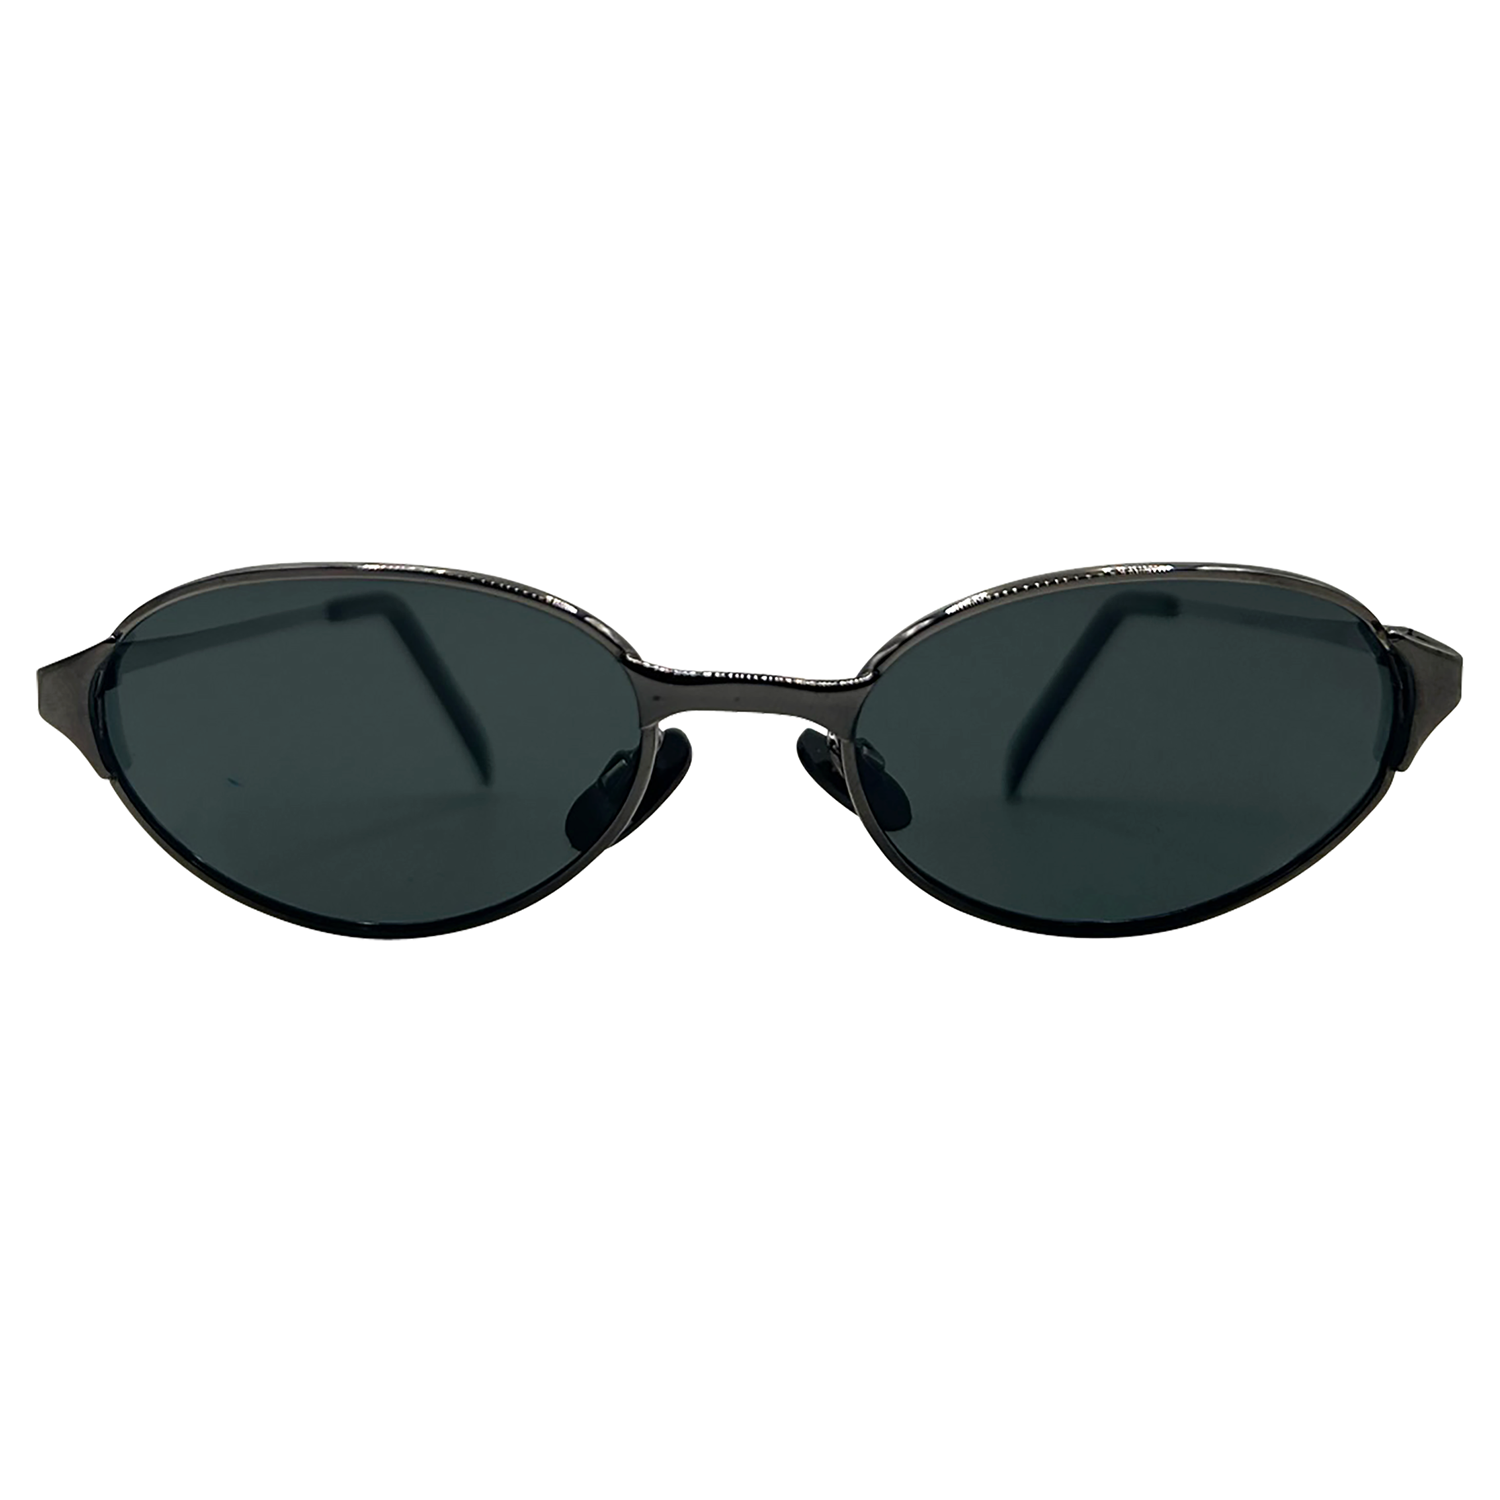 RESIST Oval Trending 90s Sunglasses